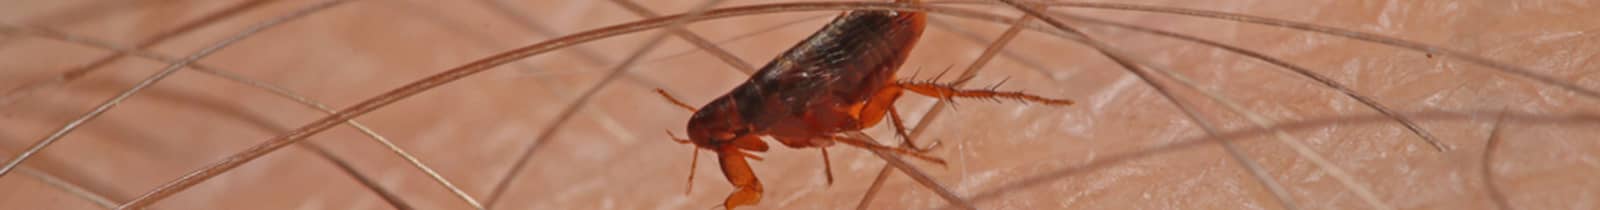 flea-exterminator-treatment Nashville, TN